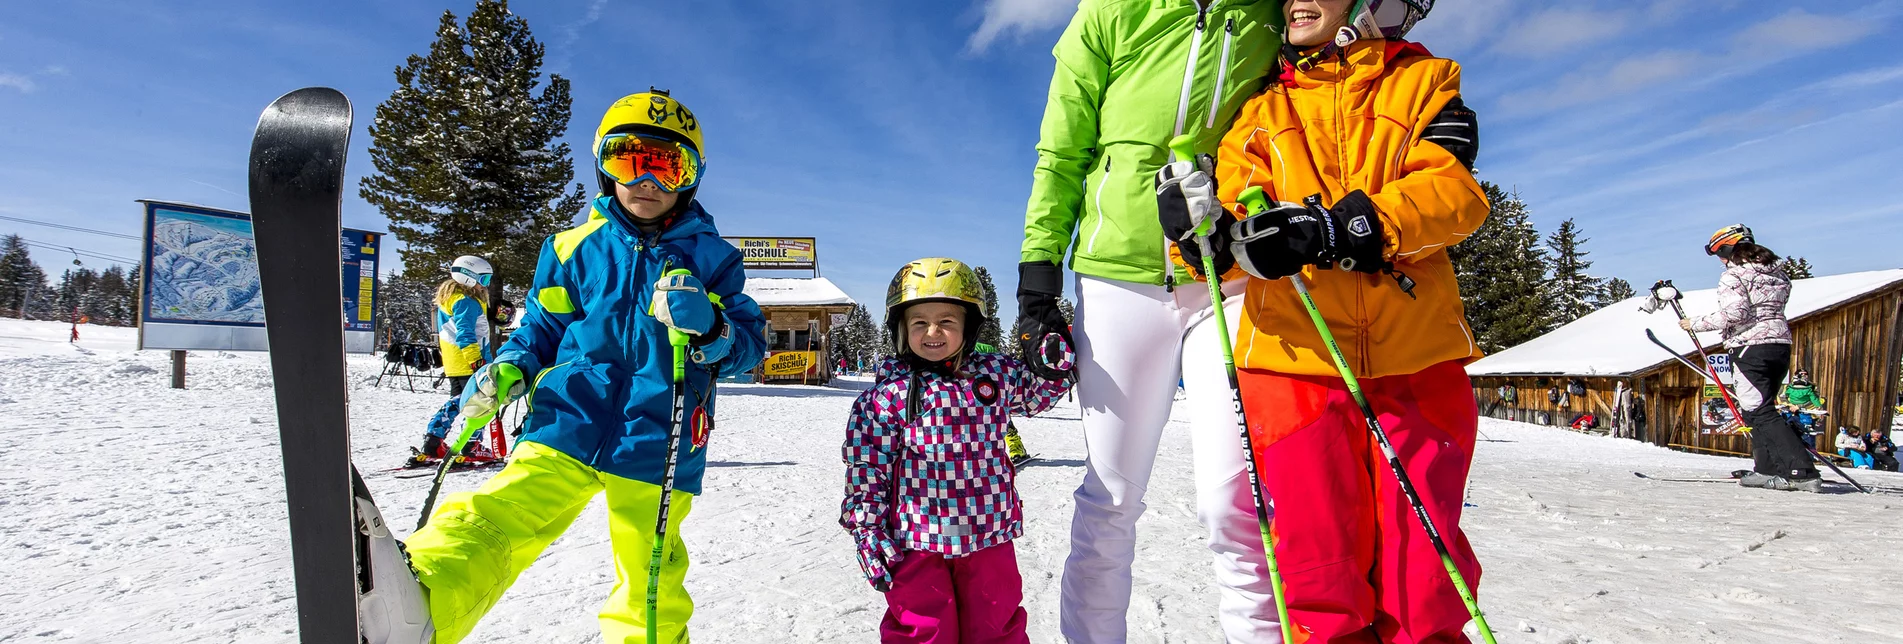 PackageFamilien-Skispaß im Advent - Gratis-Skipass für Kinder 